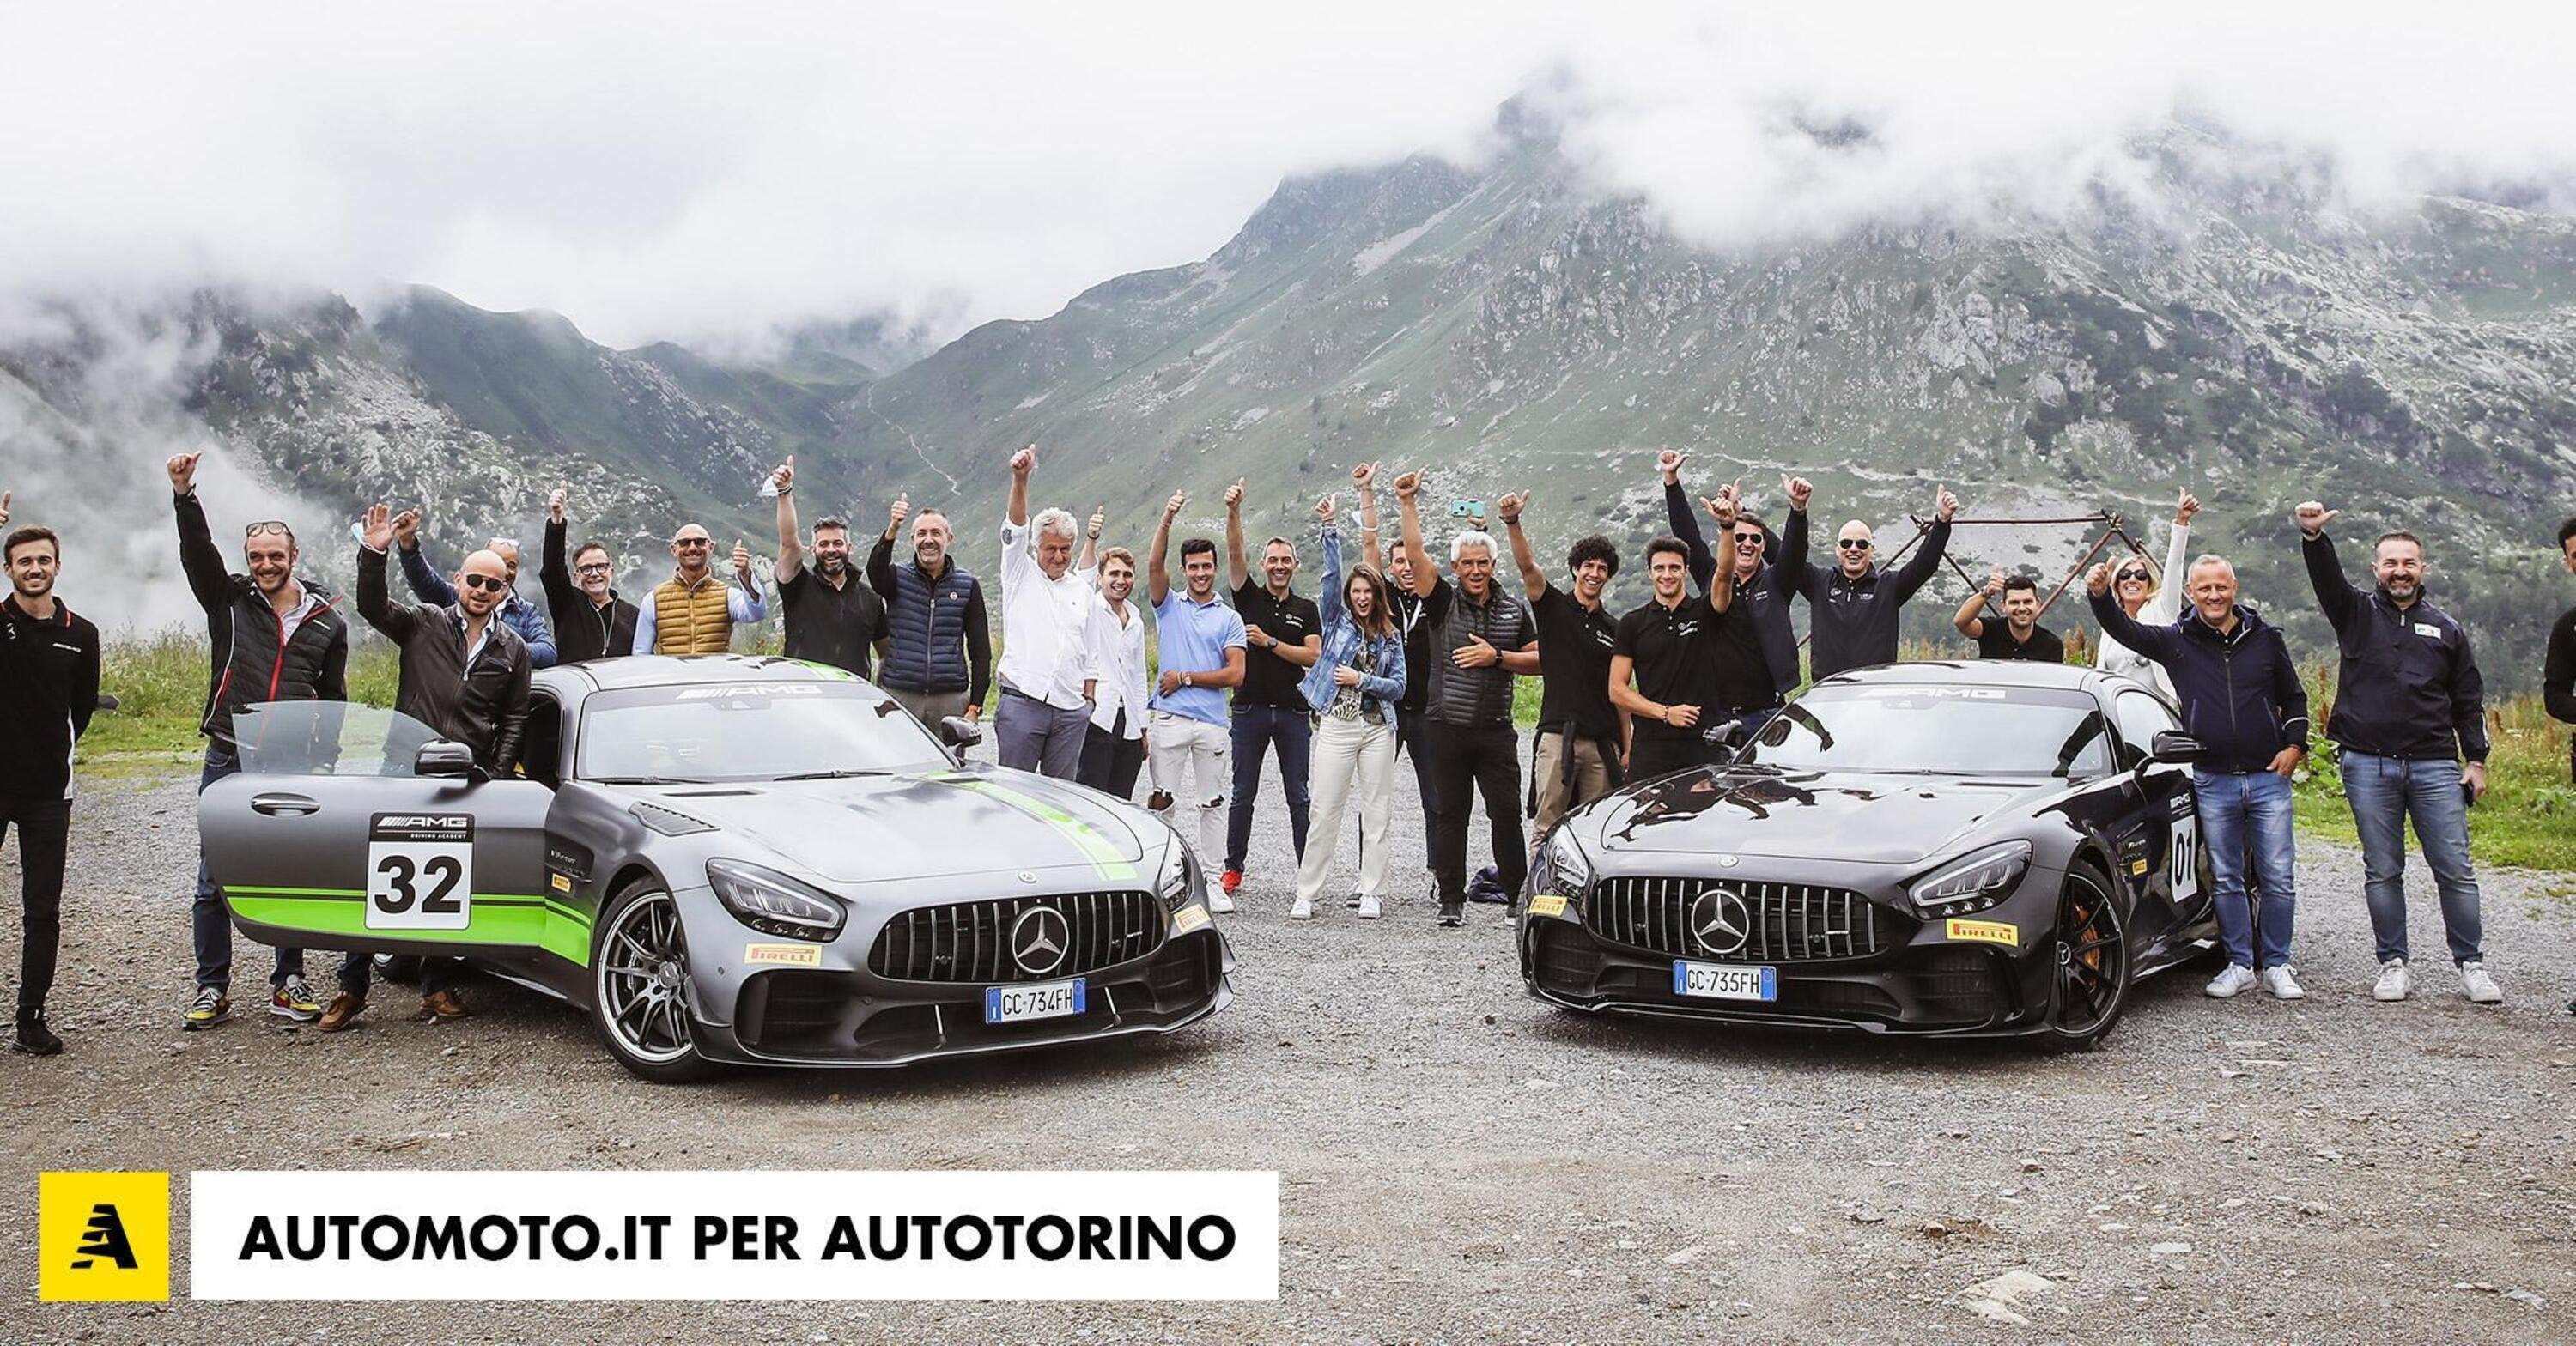 Espansione Autotorino: il gruppo lombardo raddoppia in Piemonte con Mercedes superando le 60 filiali in 5 regioni